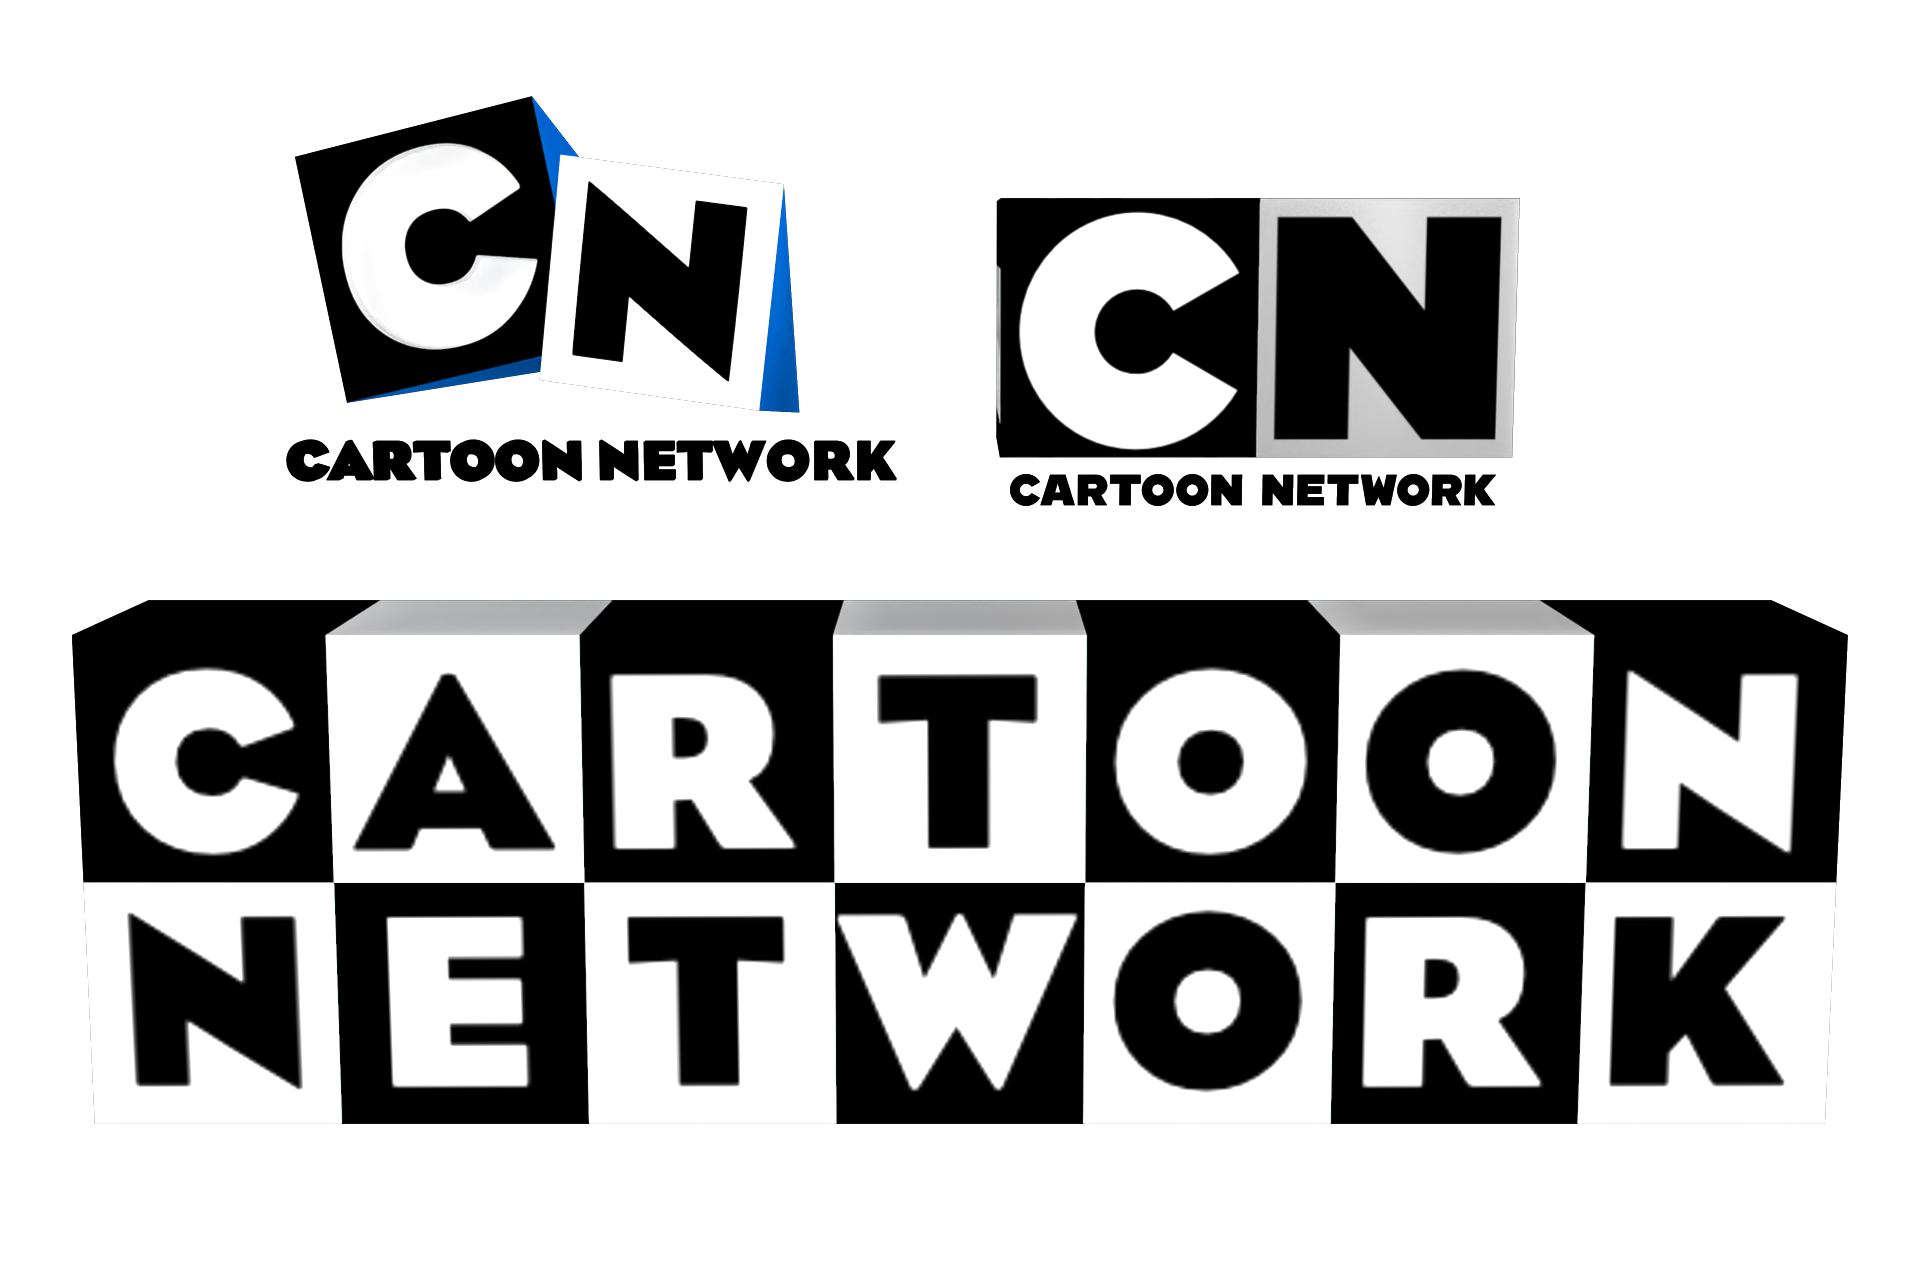 Cartoon Network Logo by Maxdemon6 on DeviantArt